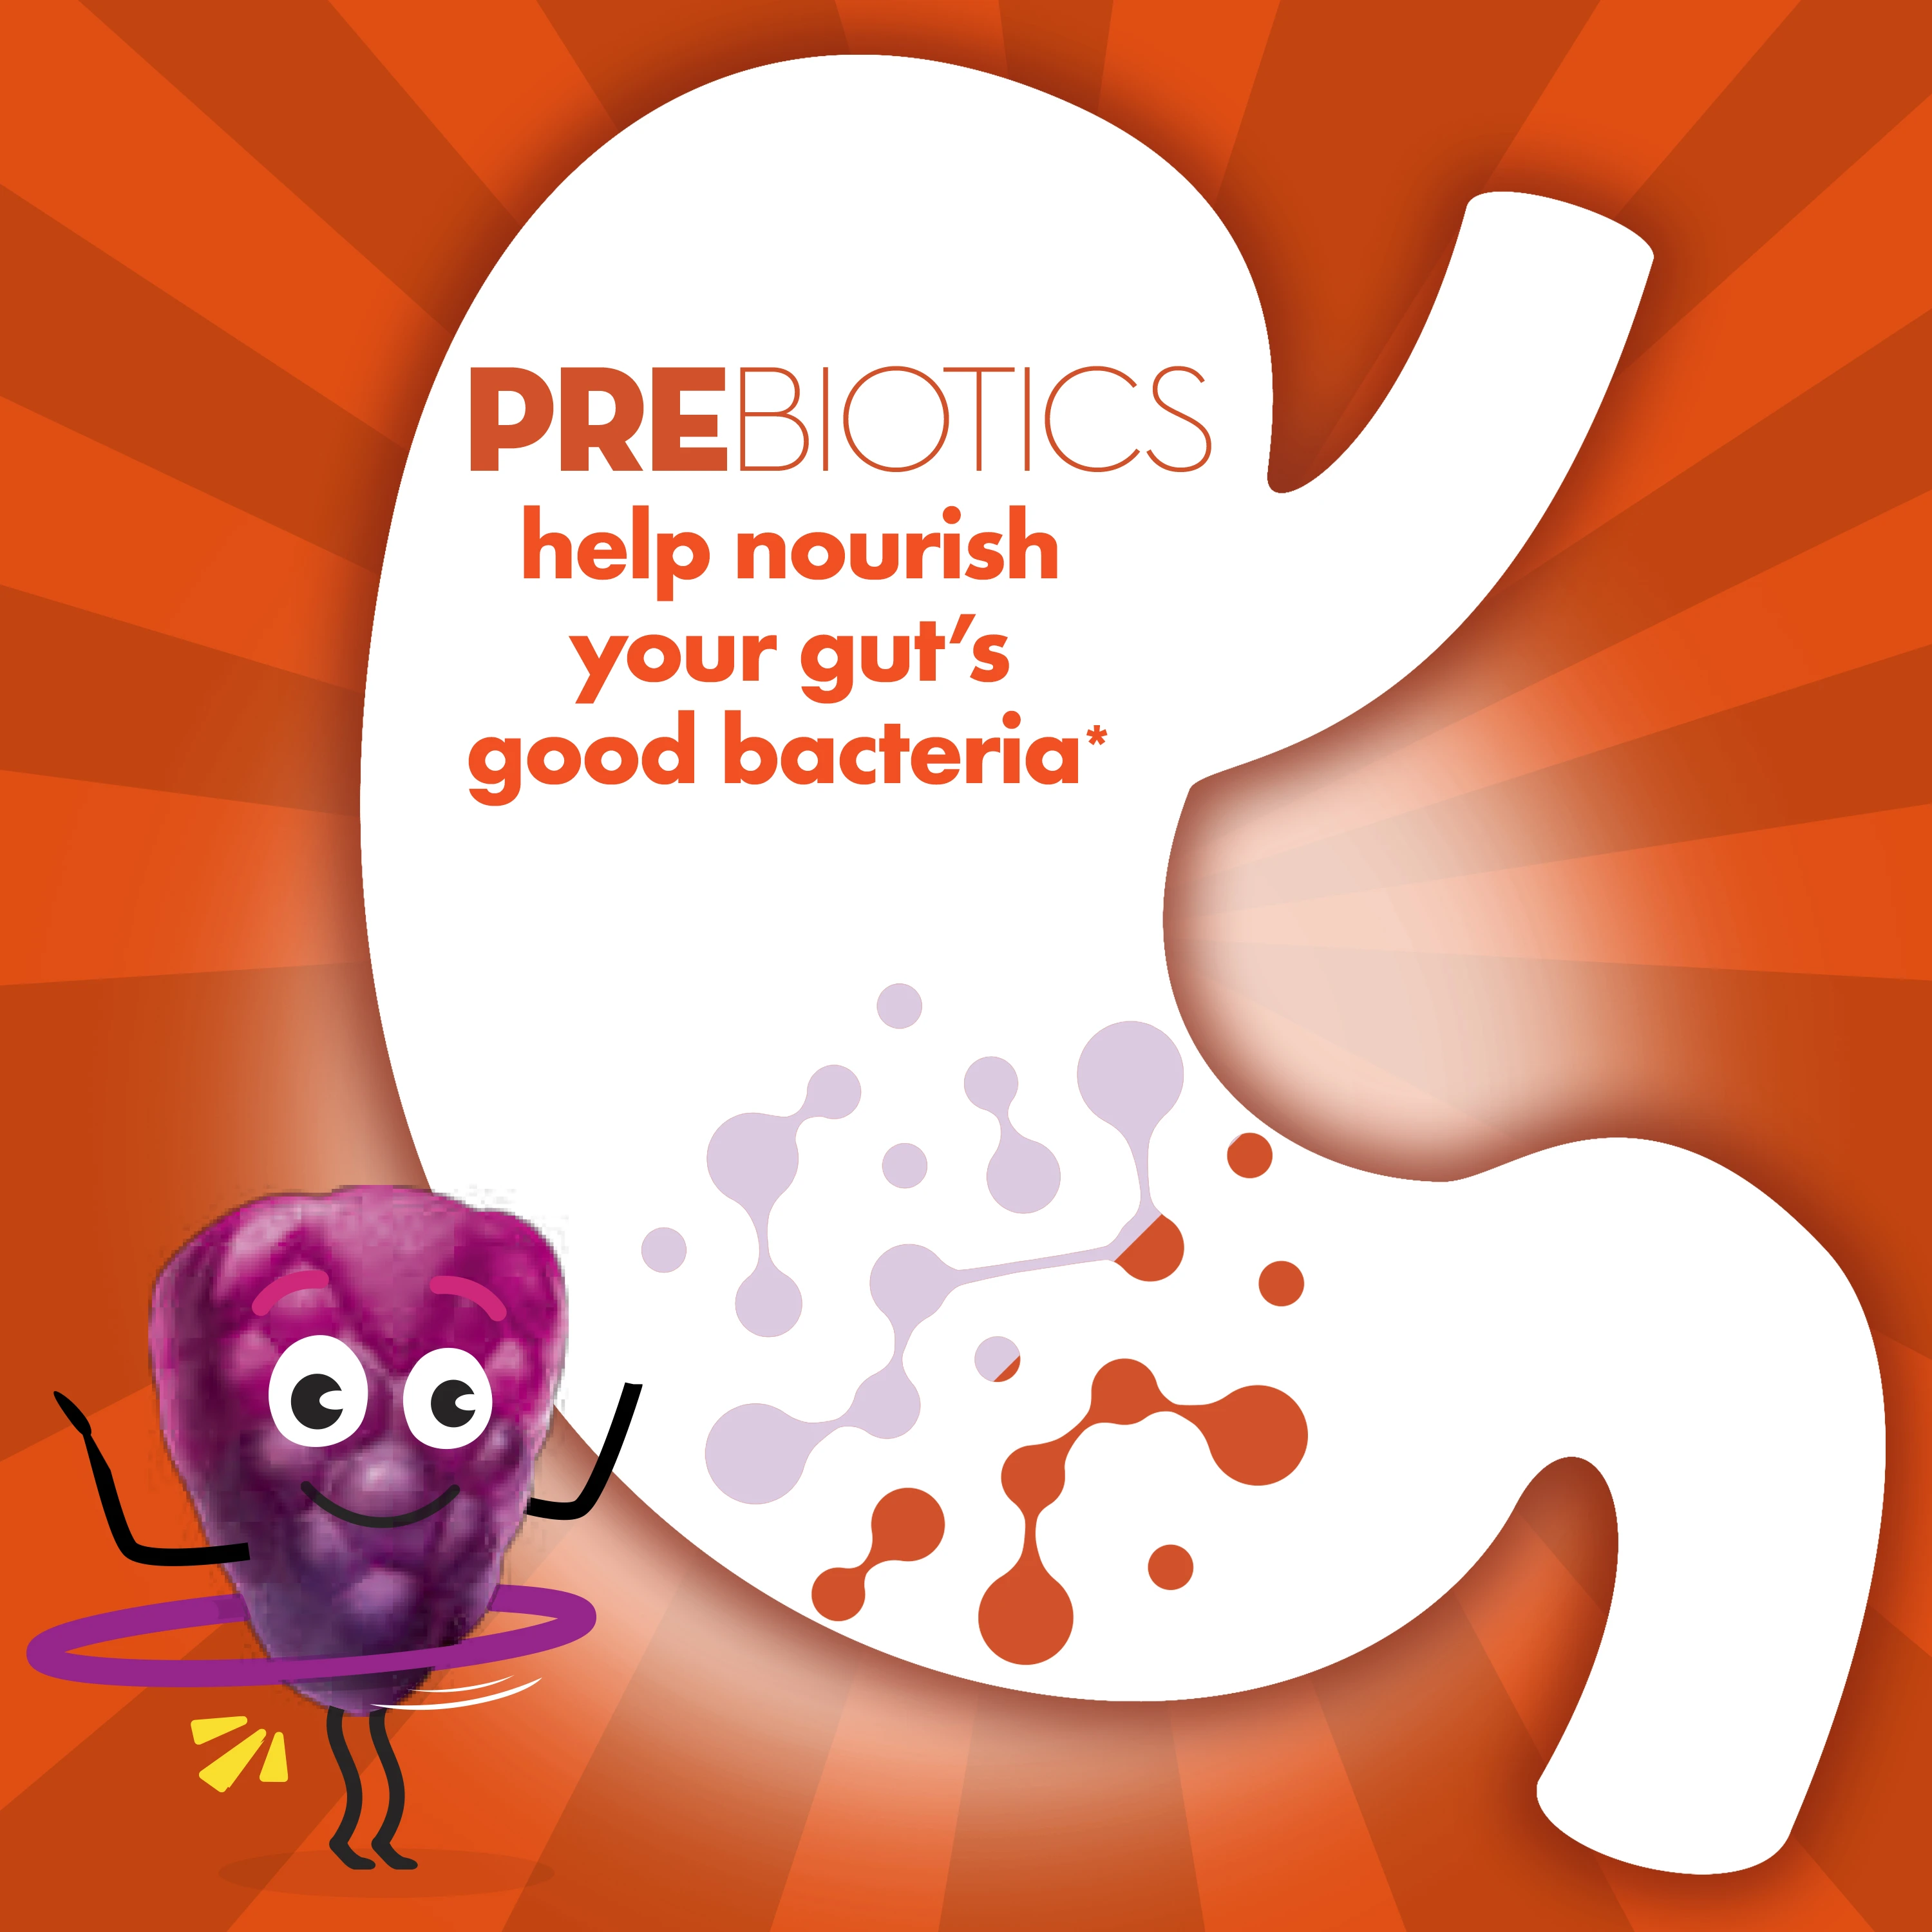 Align Kids Probiotic Supplement Gummies